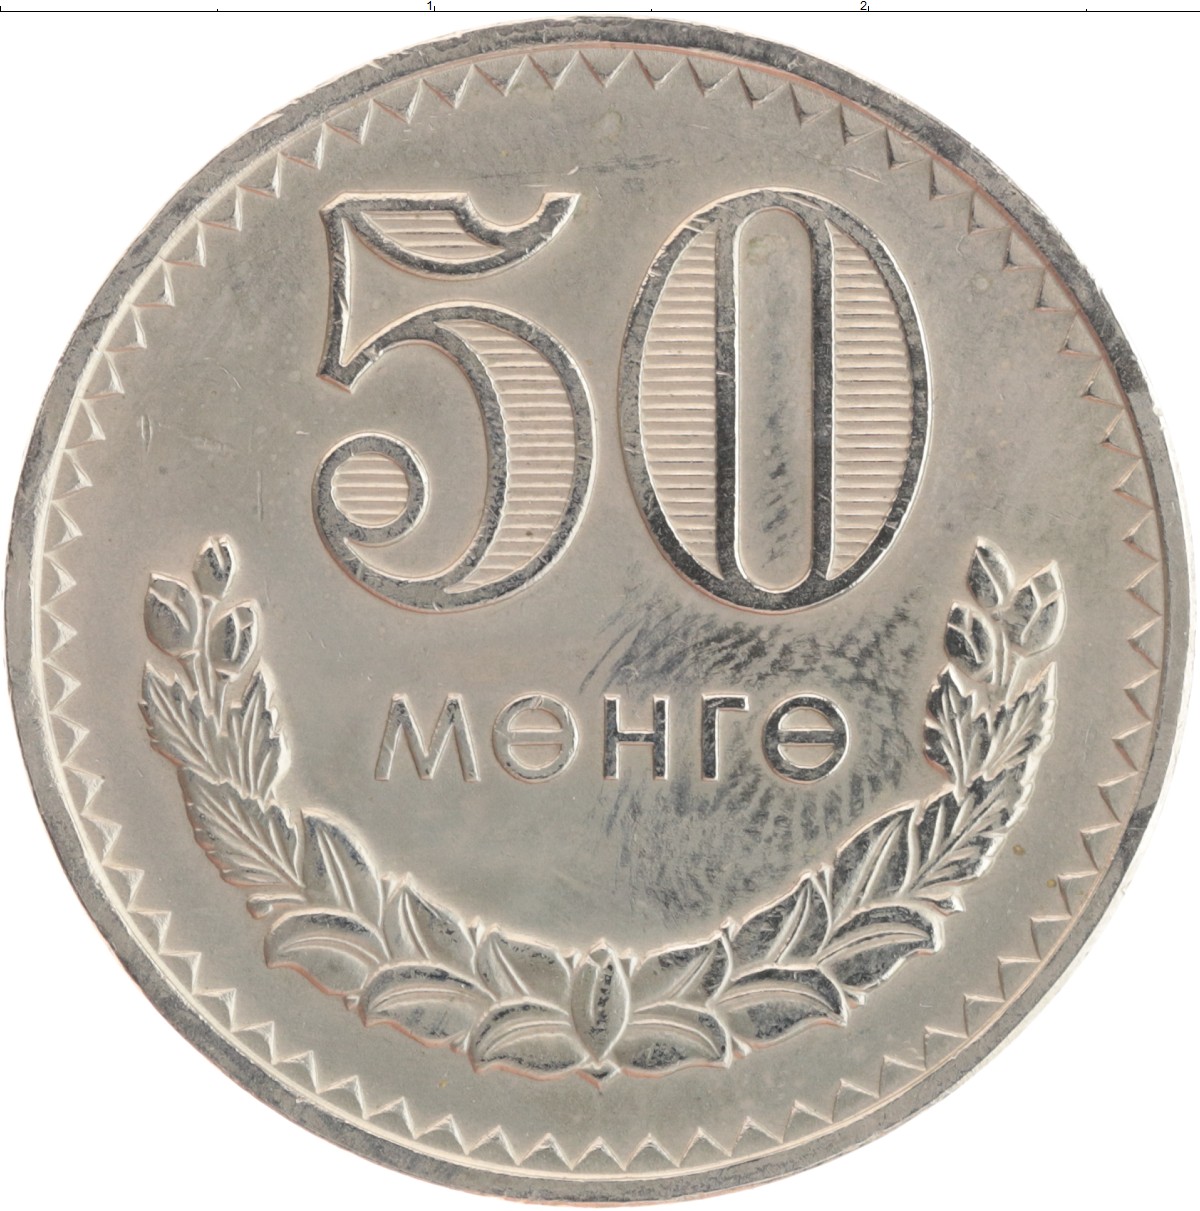 35 53 в рубли. Монгольские монеты. Мунгу монета. Самая дорогая монета Монголии. Монеты Монголии 1970 года.